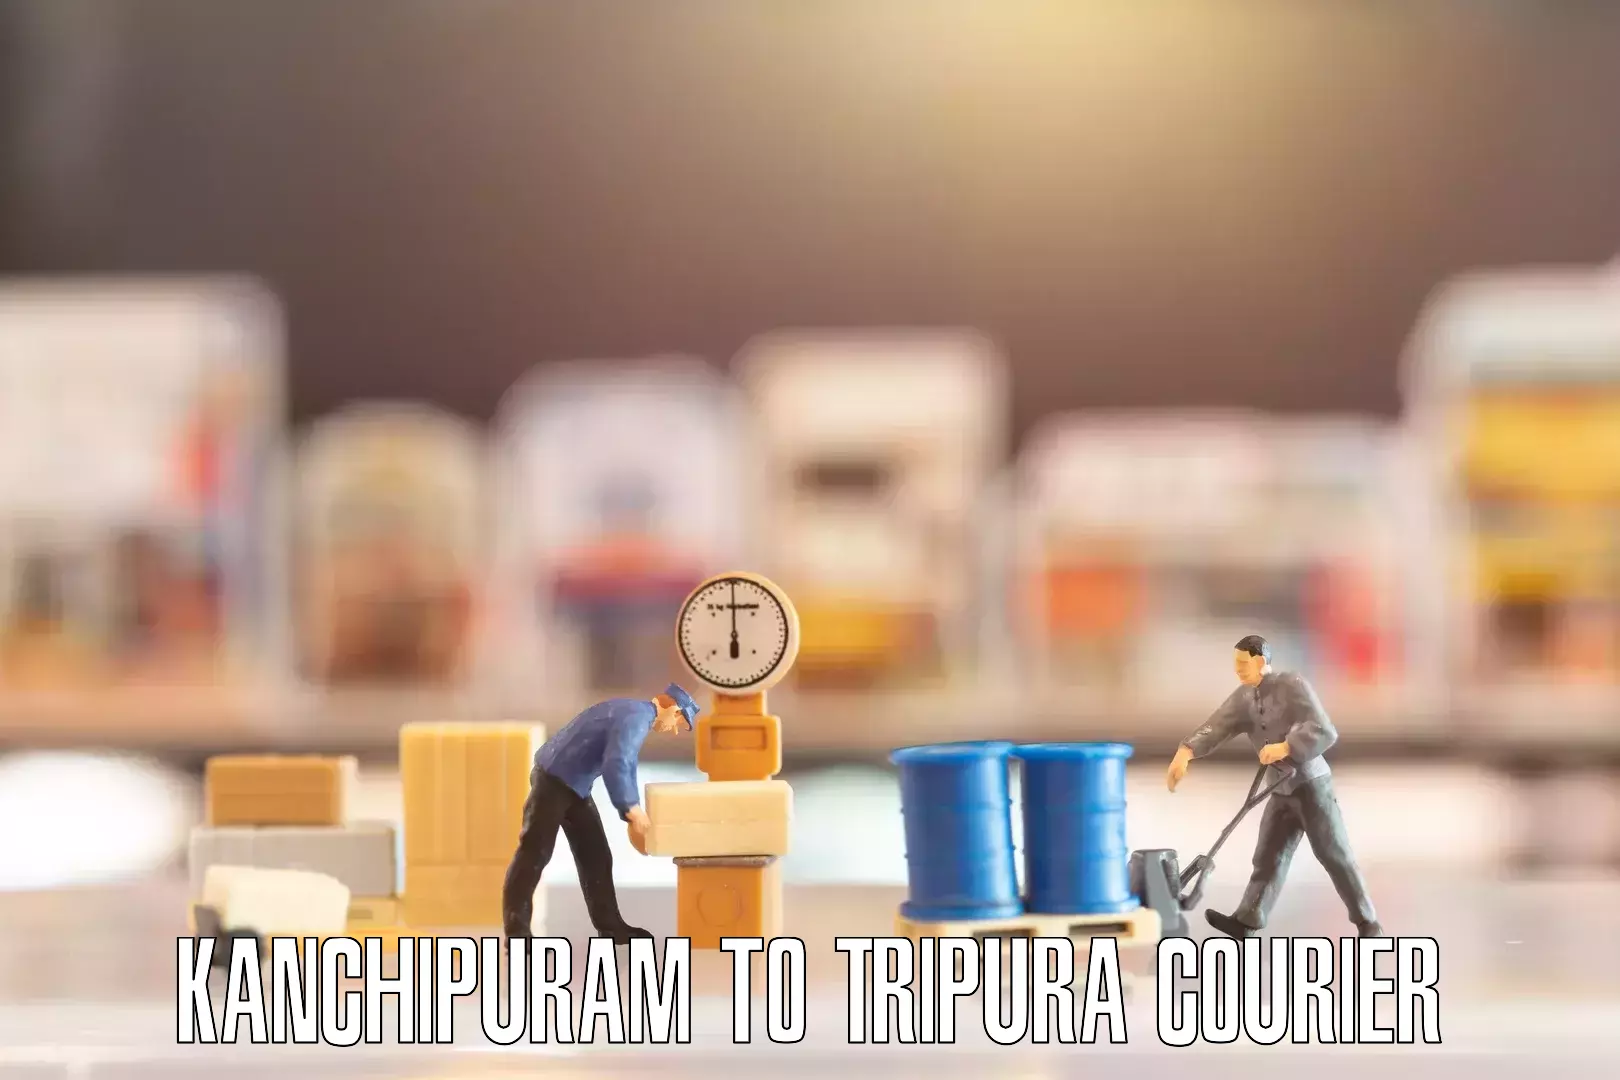 Efficient furniture movers Kanchipuram to IIIT Agartala